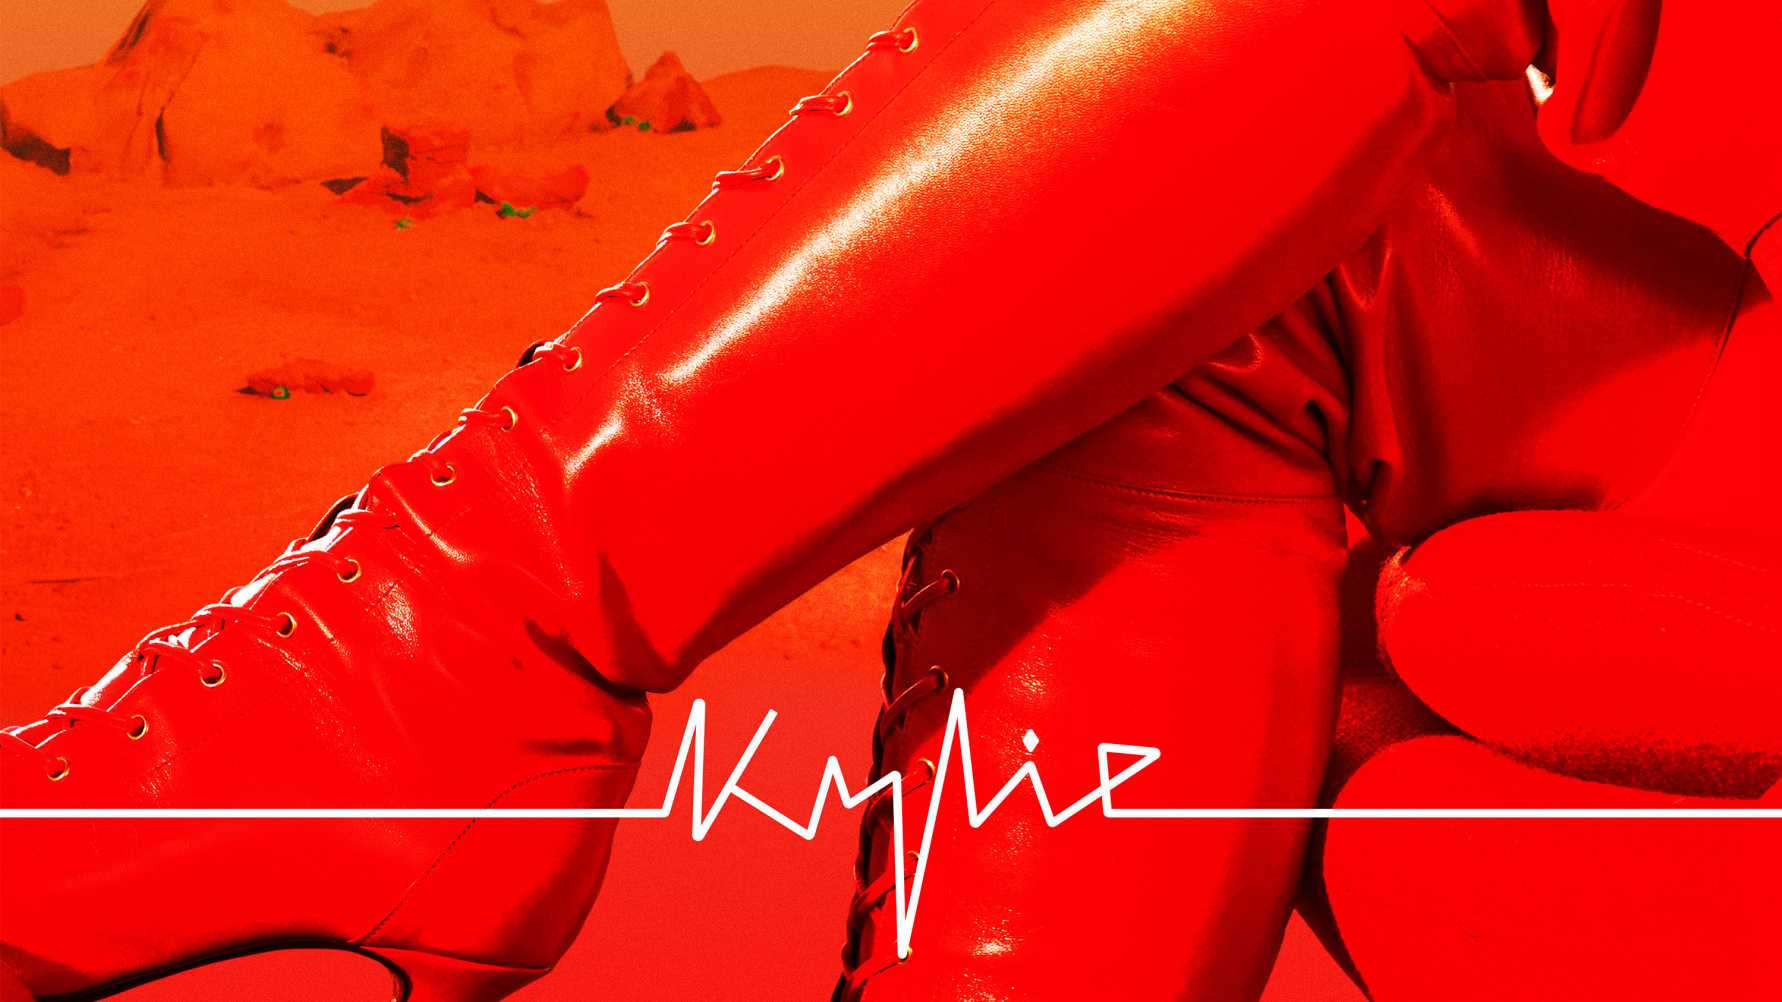 NY MUSIK. Kylies nya singel och video “Padam Padam” är ute nu - första smakprovet från det kommande albumet “Tension”som släpps den 22 september